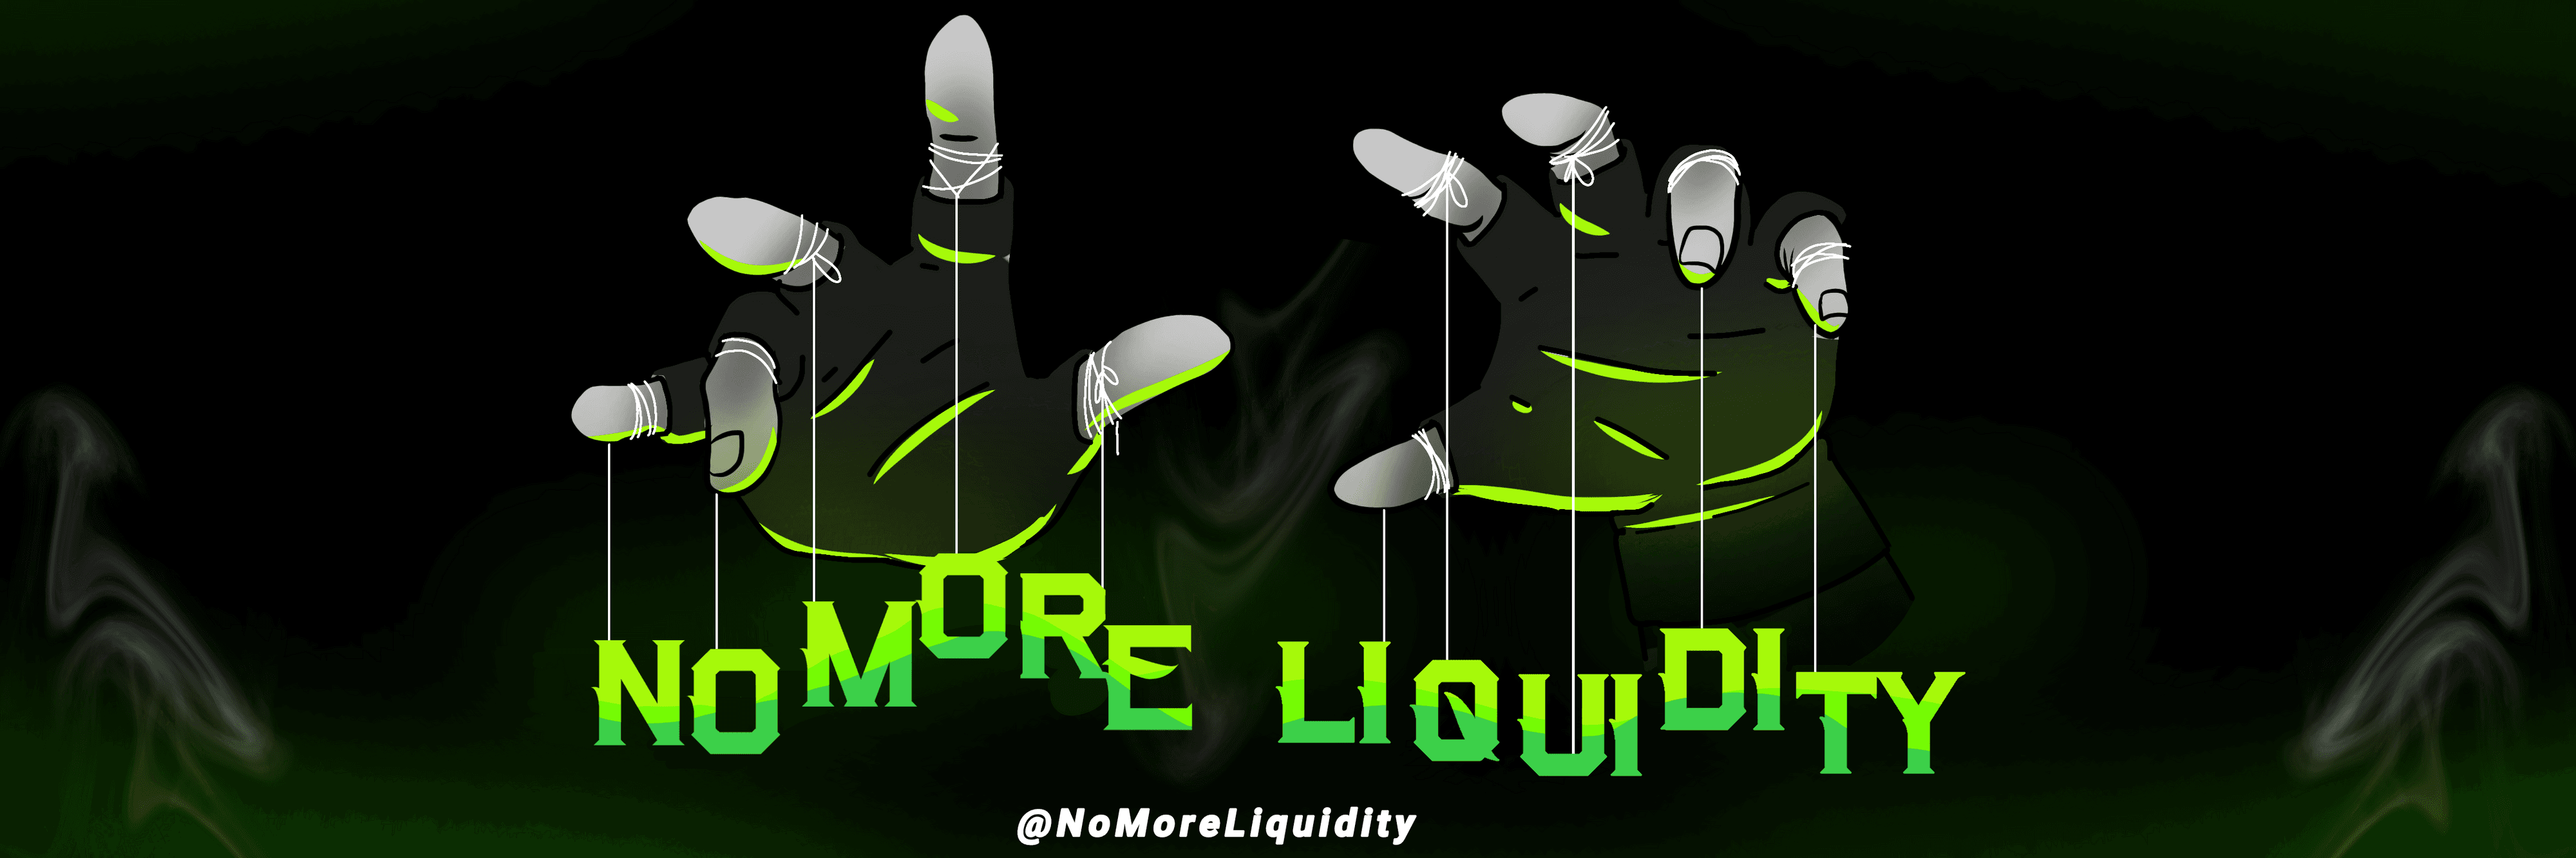 NoMoreLiquidity banner